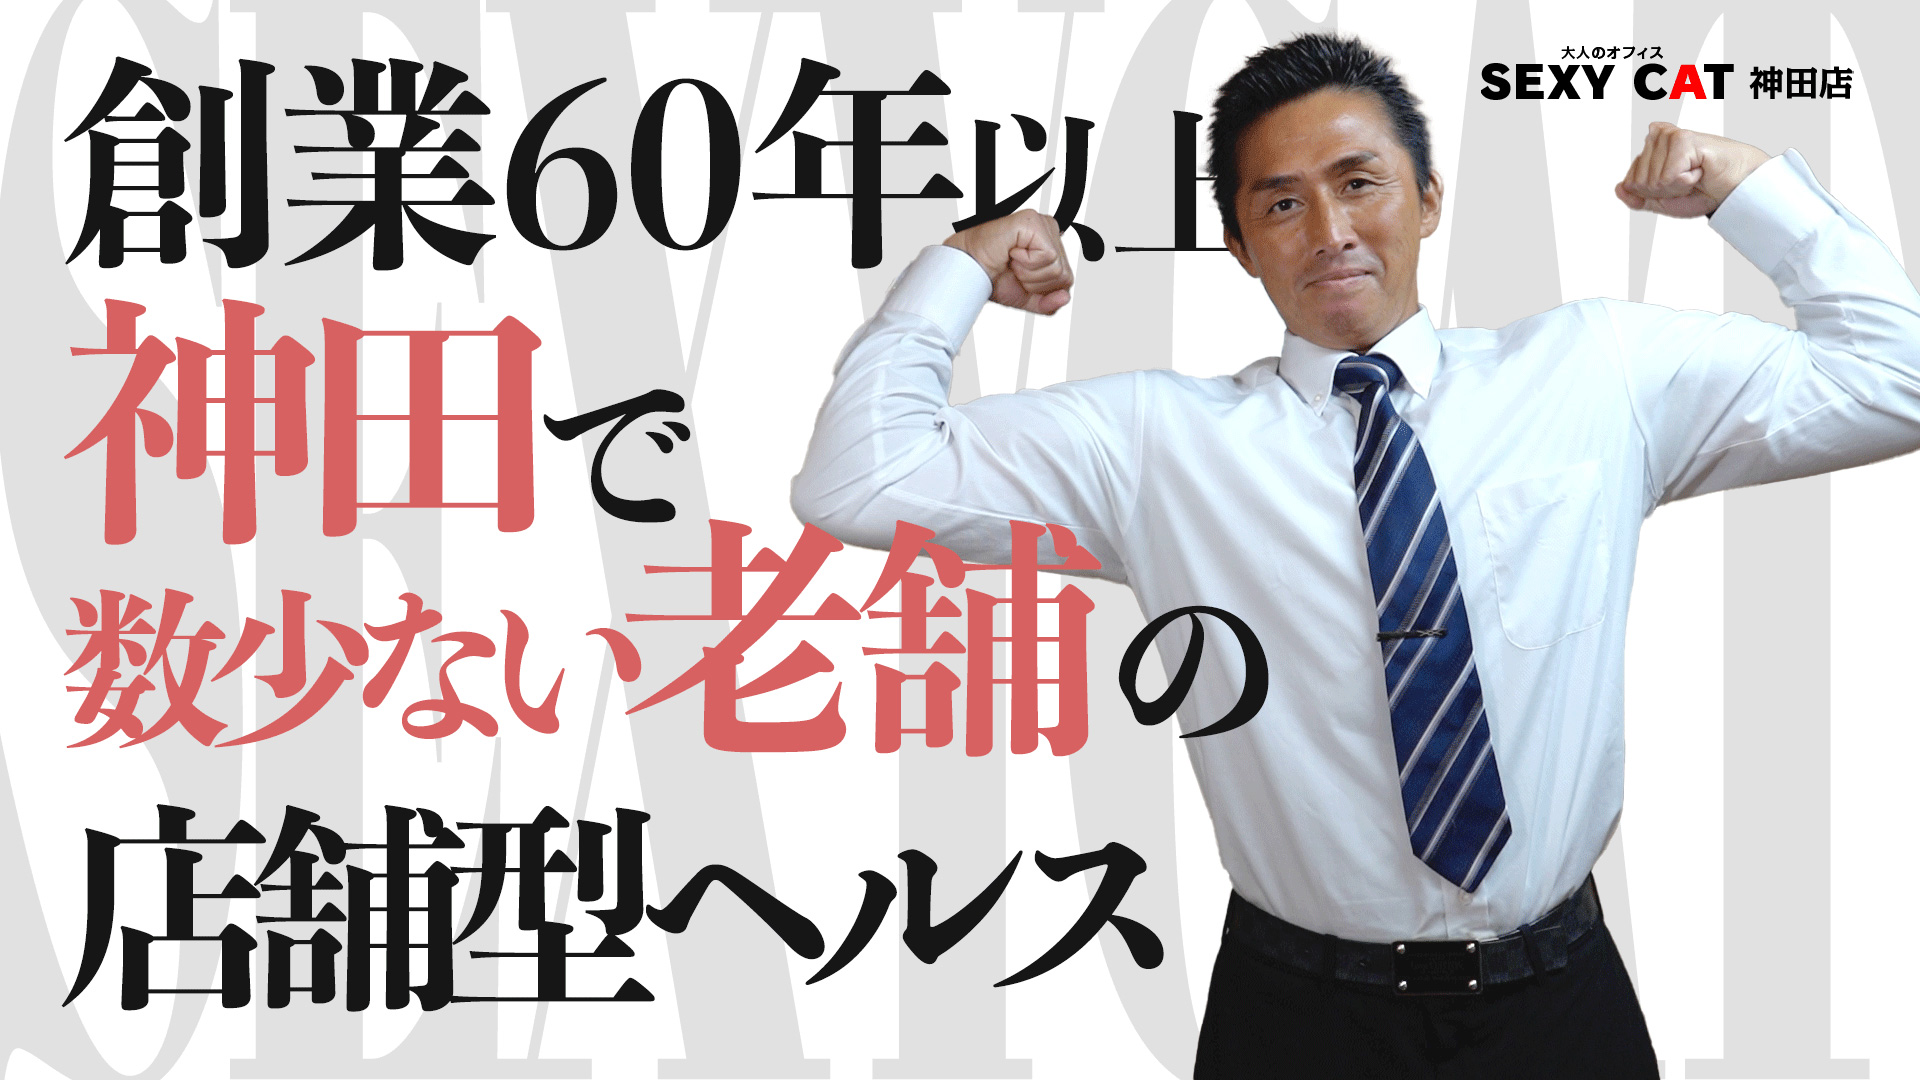 セクシーキャット 神田店のスタッフによるお仕事紹介動画